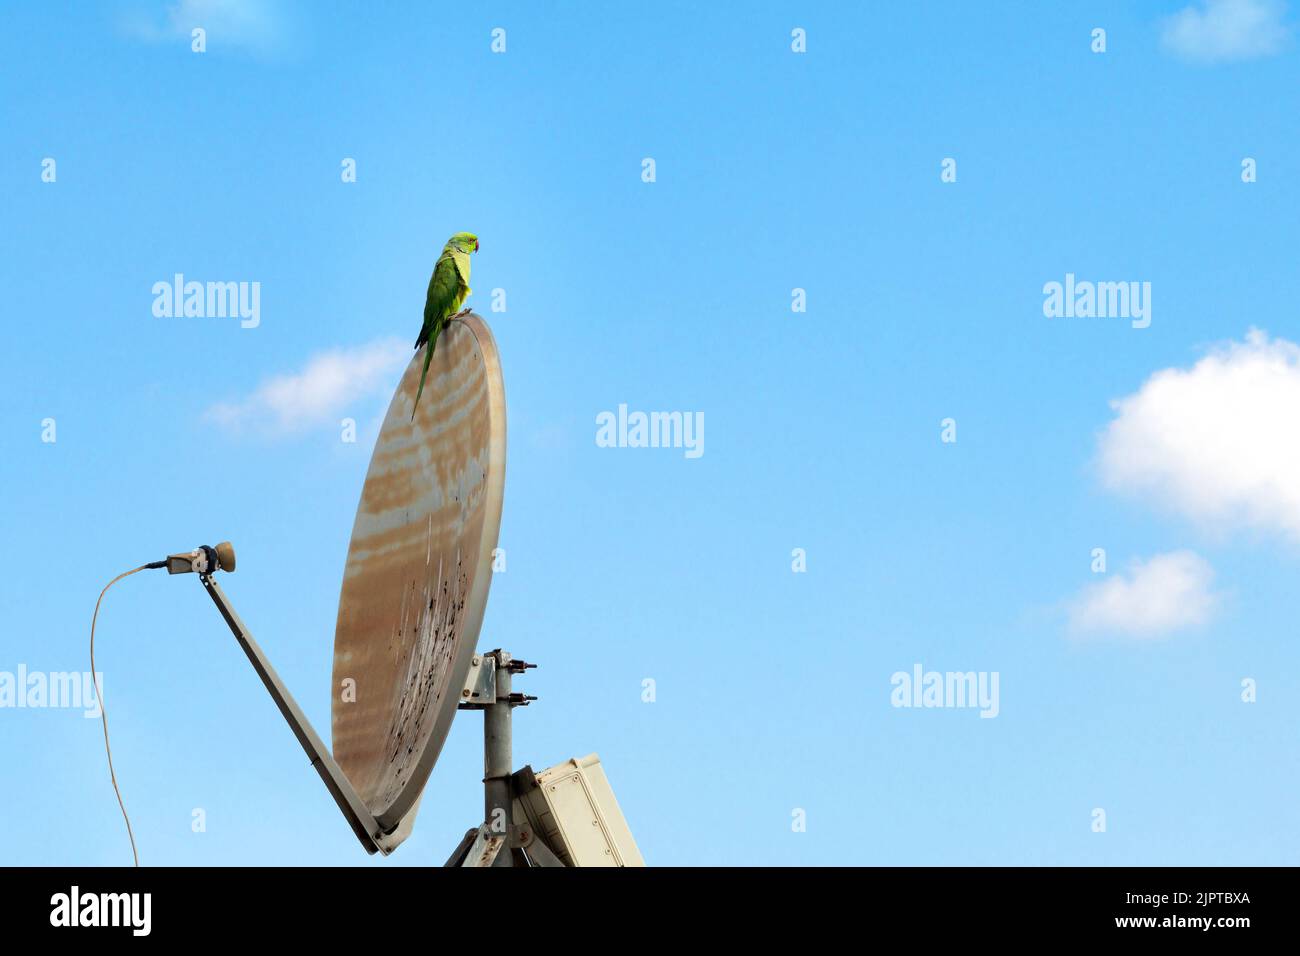 Le perroquet vert se trouve sur un ancien plat d'antenne parabolique sur le fond bleu du ciel Banque D'Images